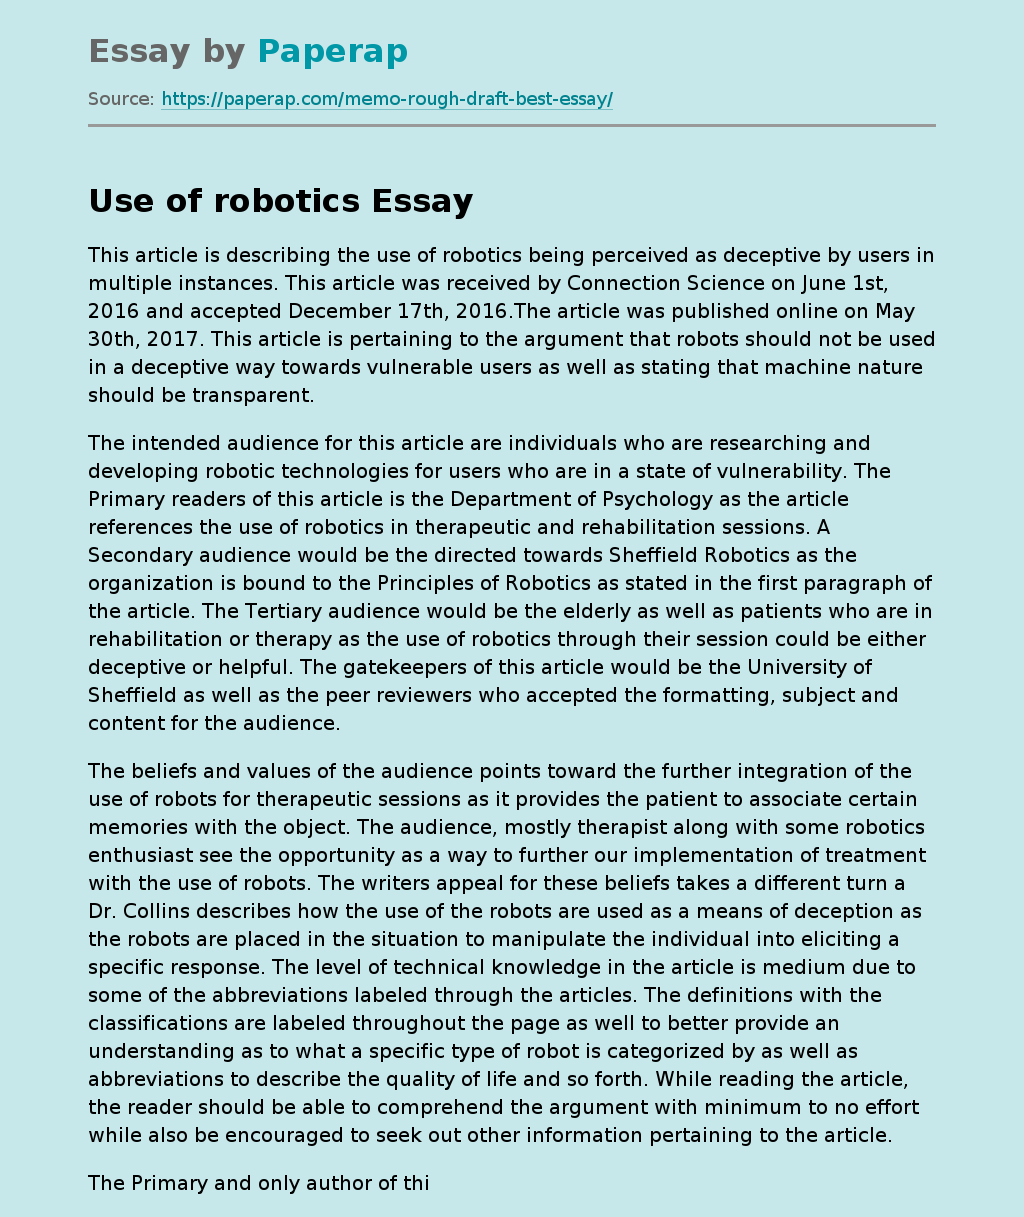 Use of Robotics